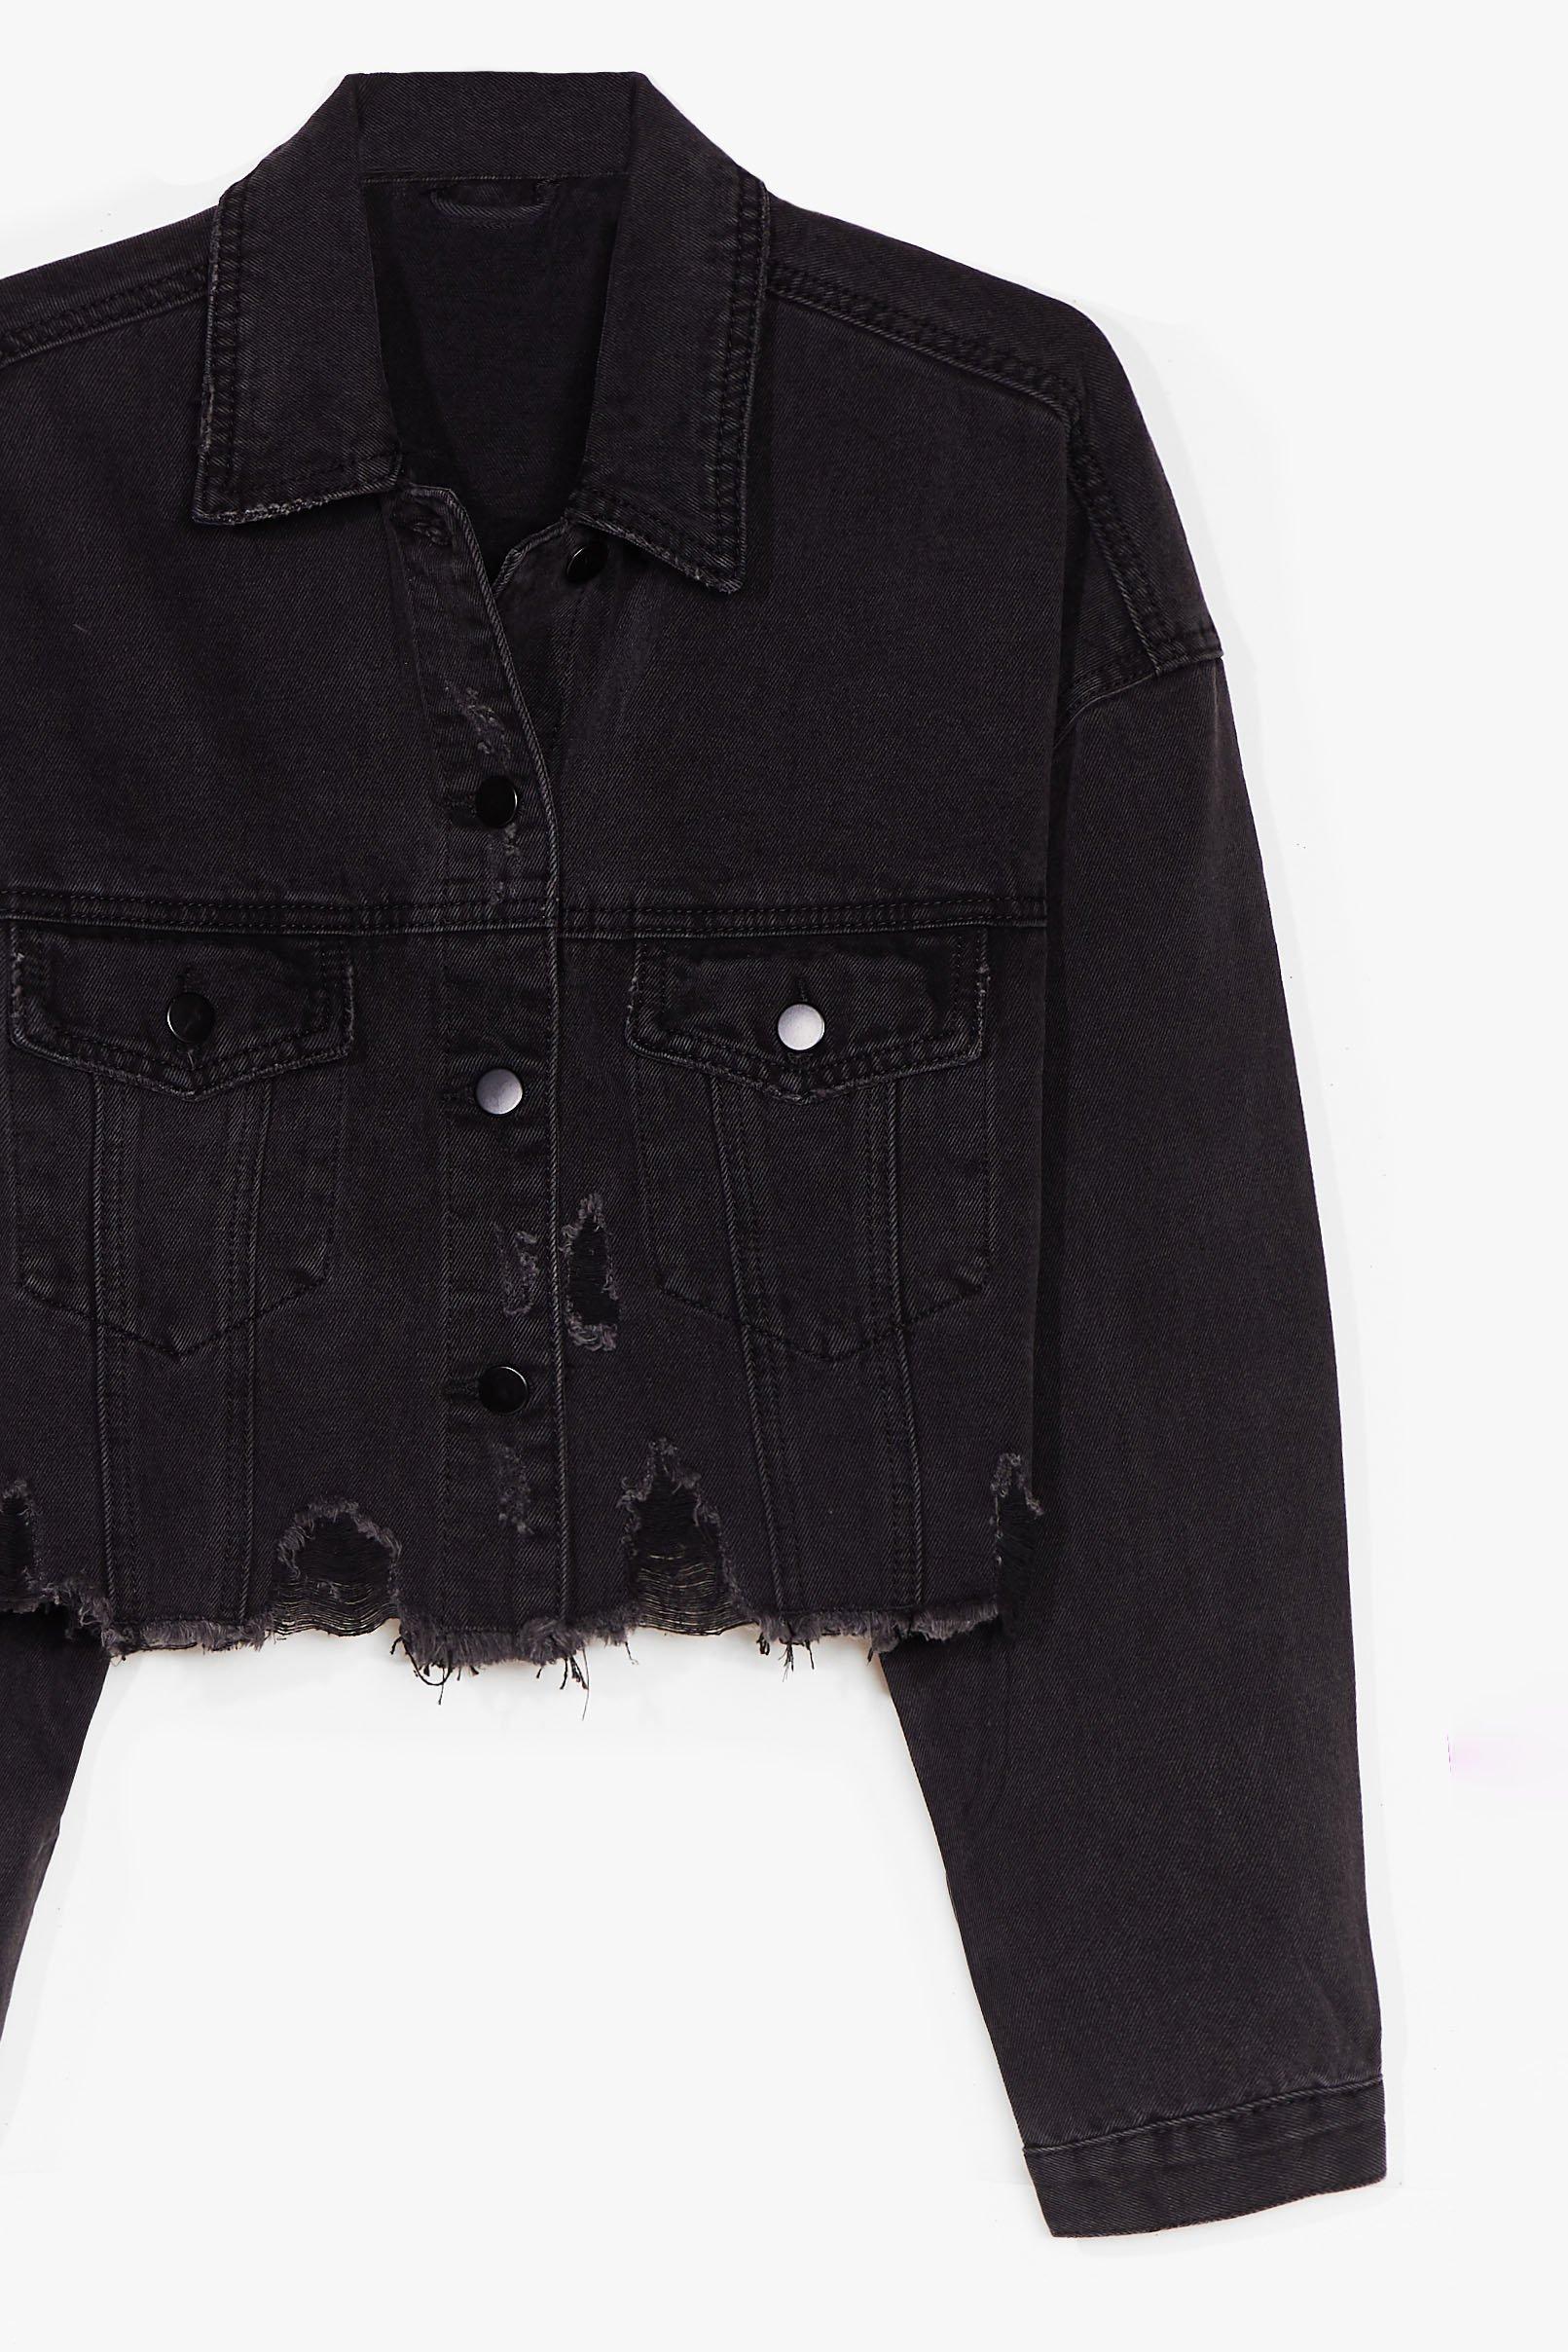 black jean jacket cropped